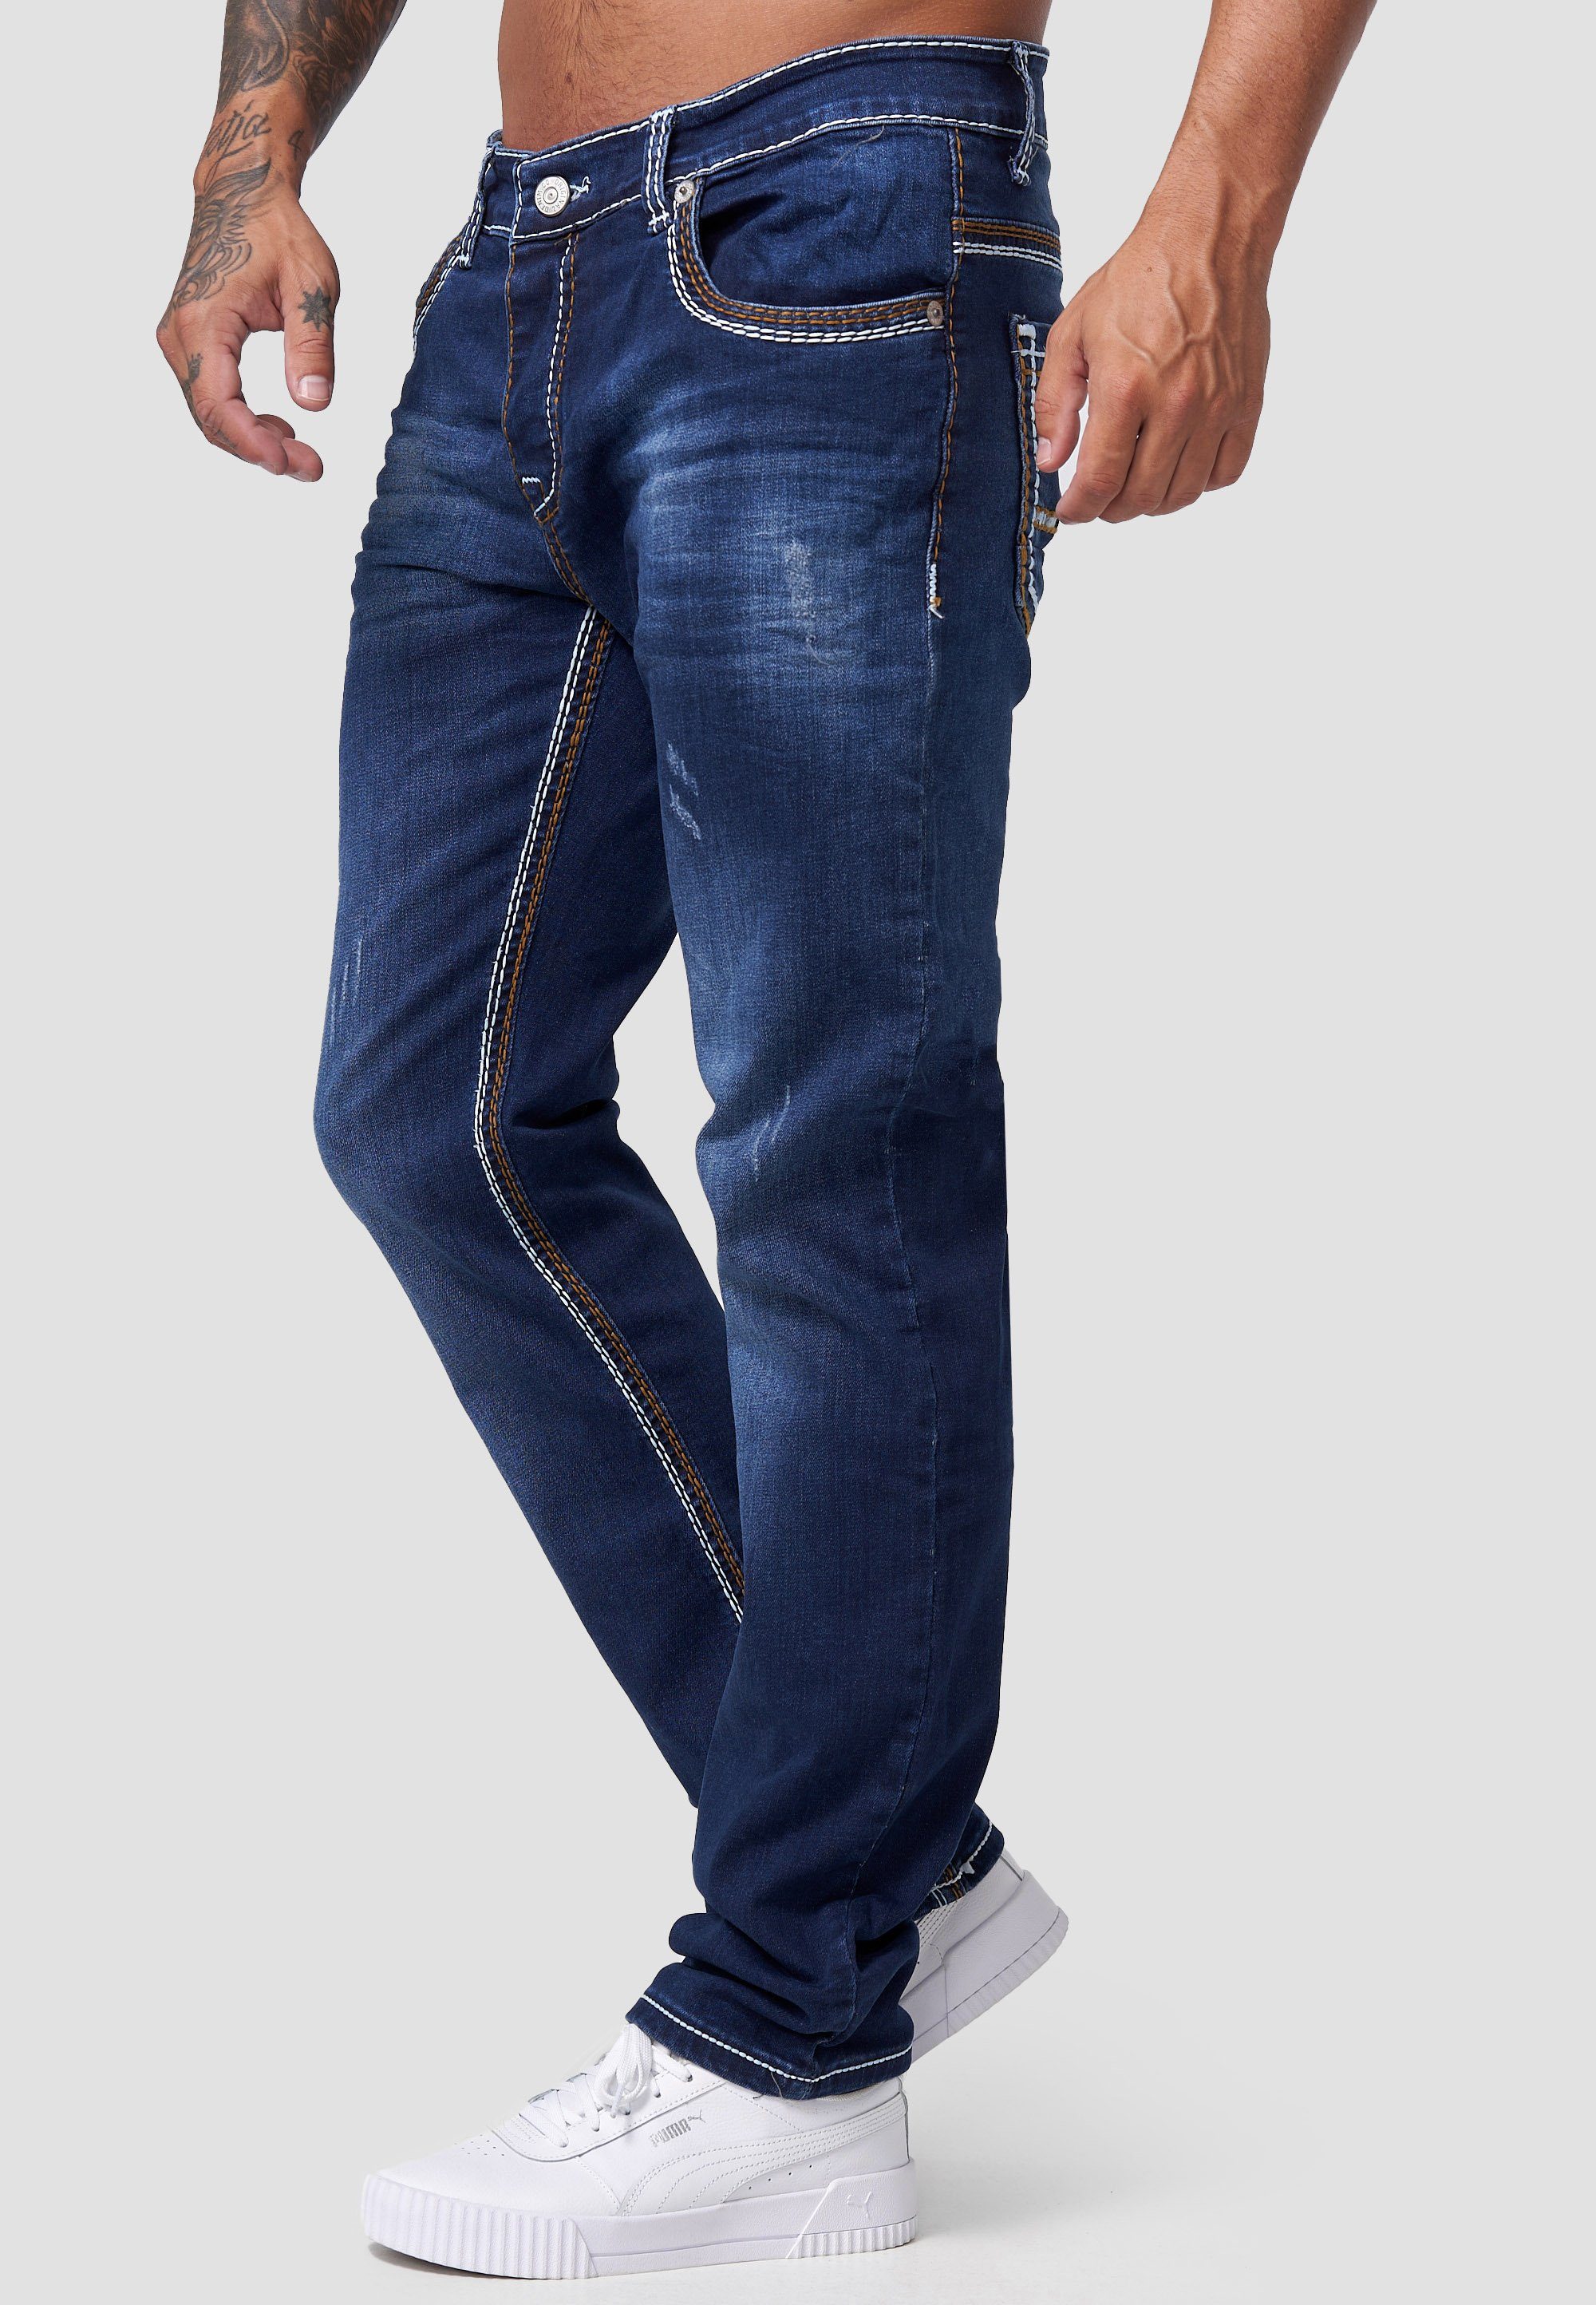 Männer Fit Hose Designerjeans Code47 Denim Herren Fit Slim Regular Jeans Regular-fit-Jeans